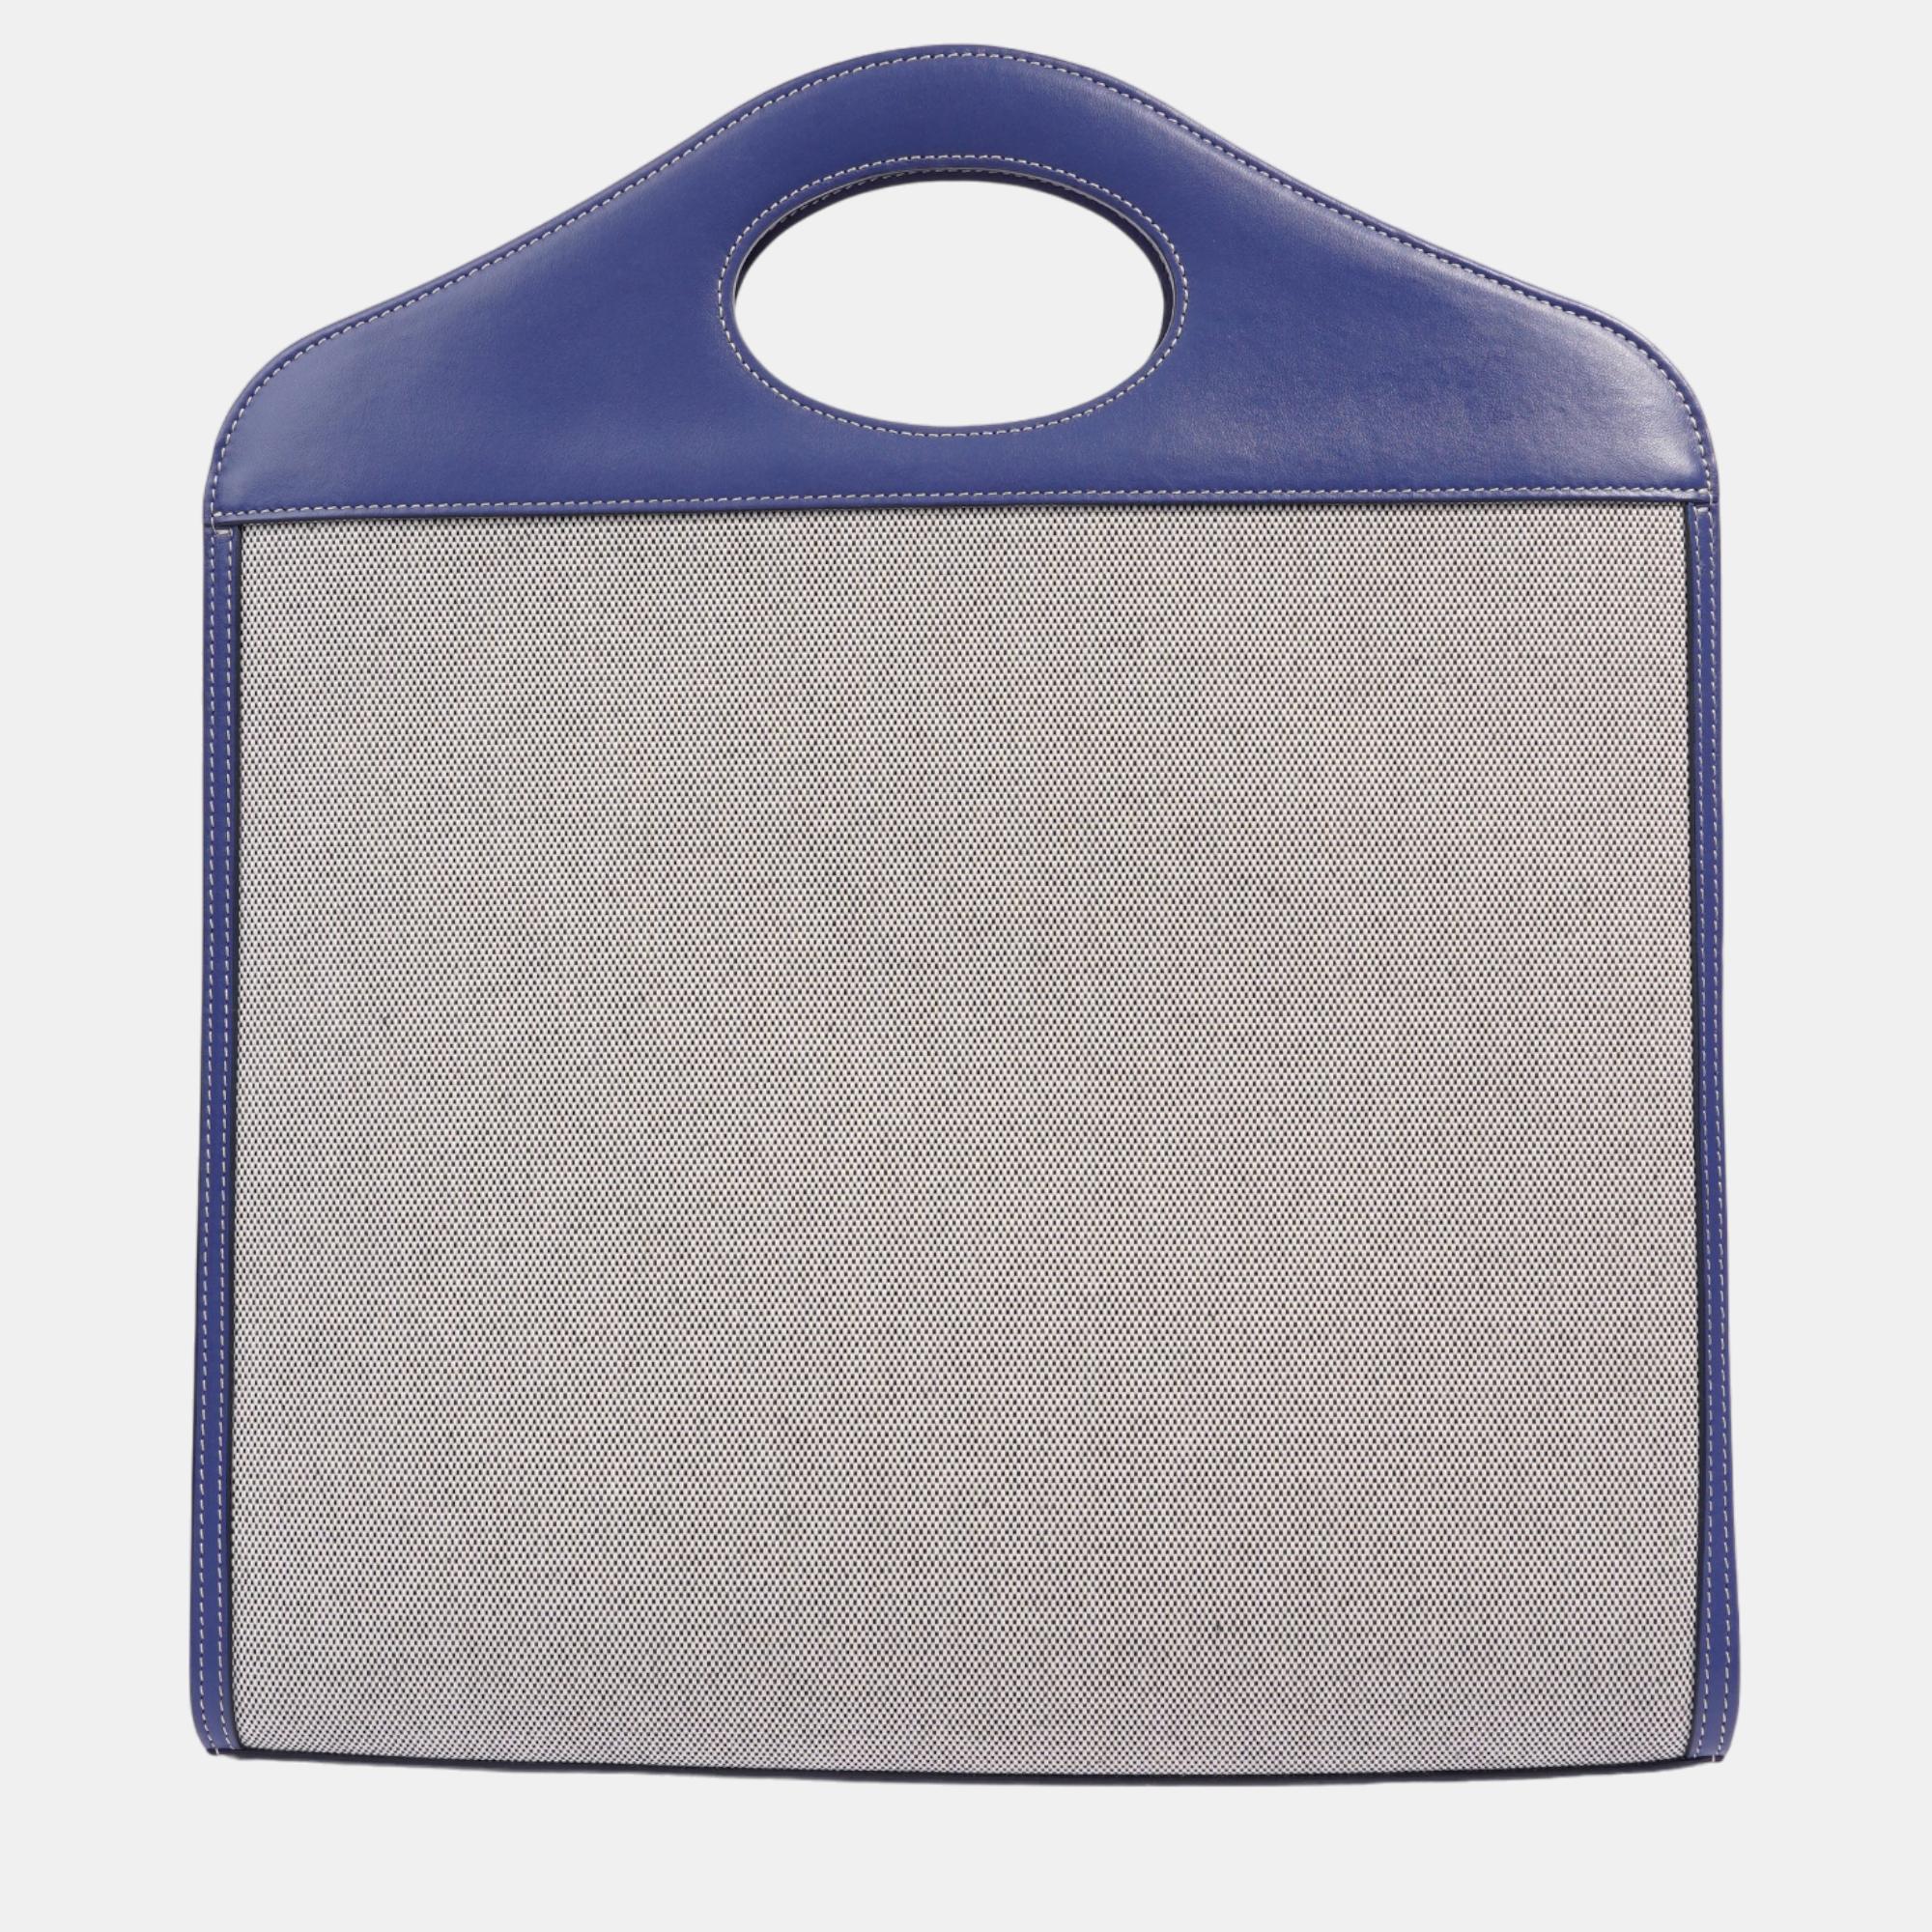 Burberry Pocket Bag Blue Canvas Medium